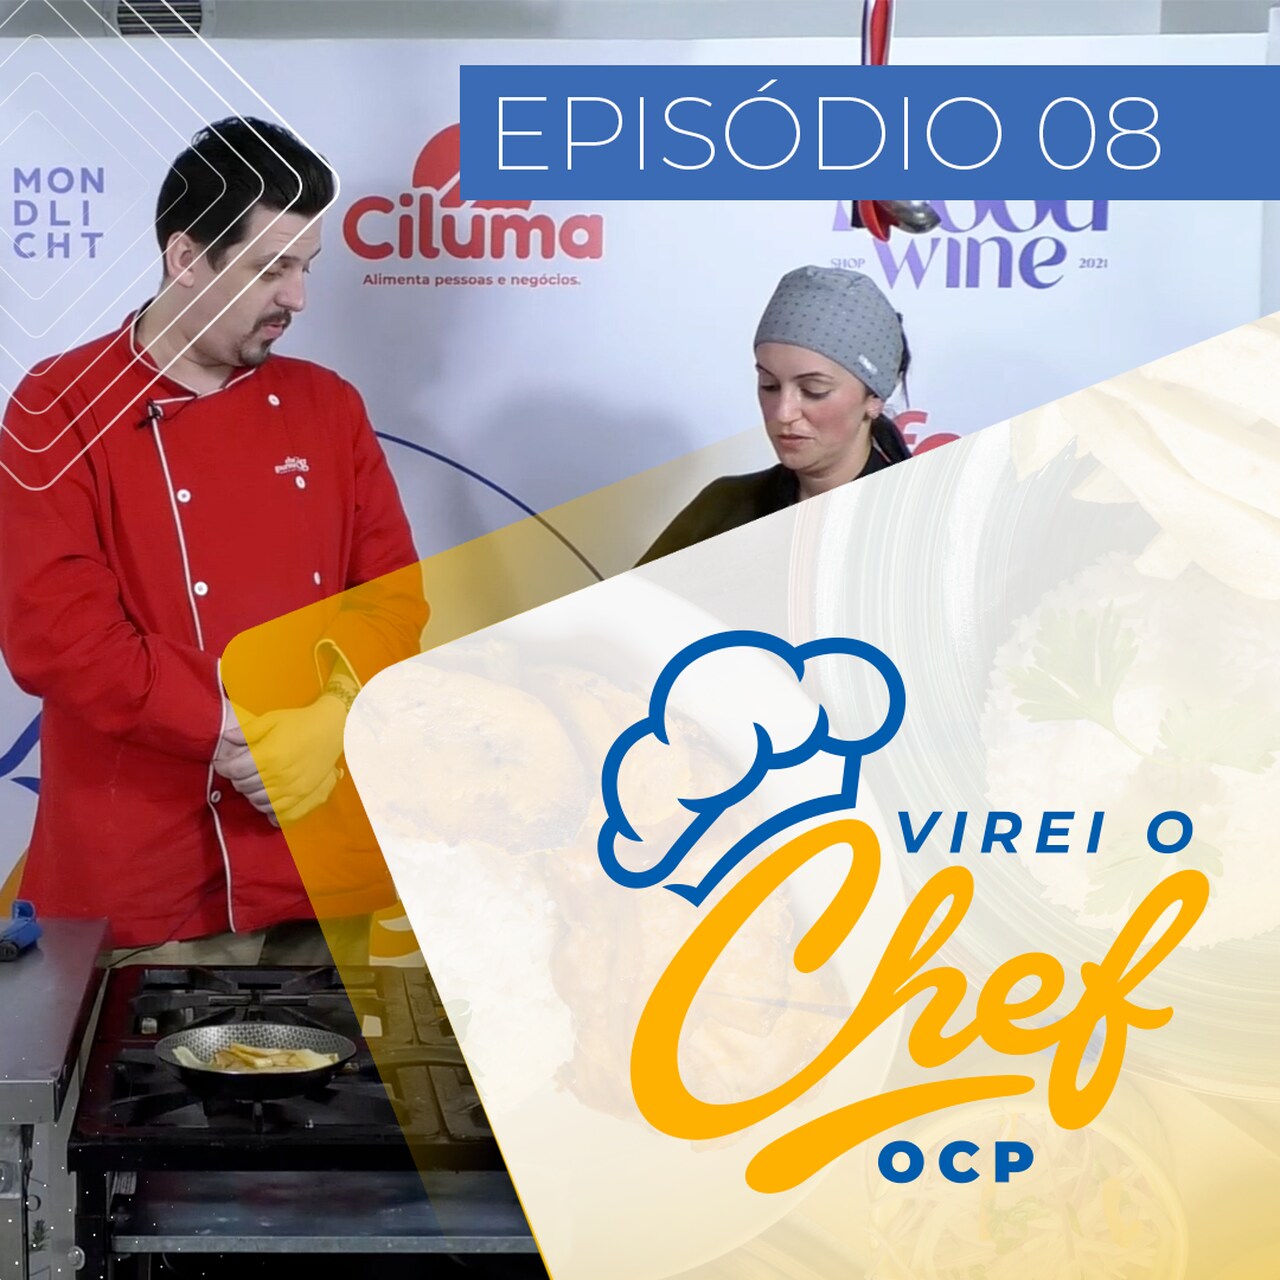 Confira o oitavo episódio do reality "Virei o Chef" com a participante Vivian Vaghetti de Oliveira